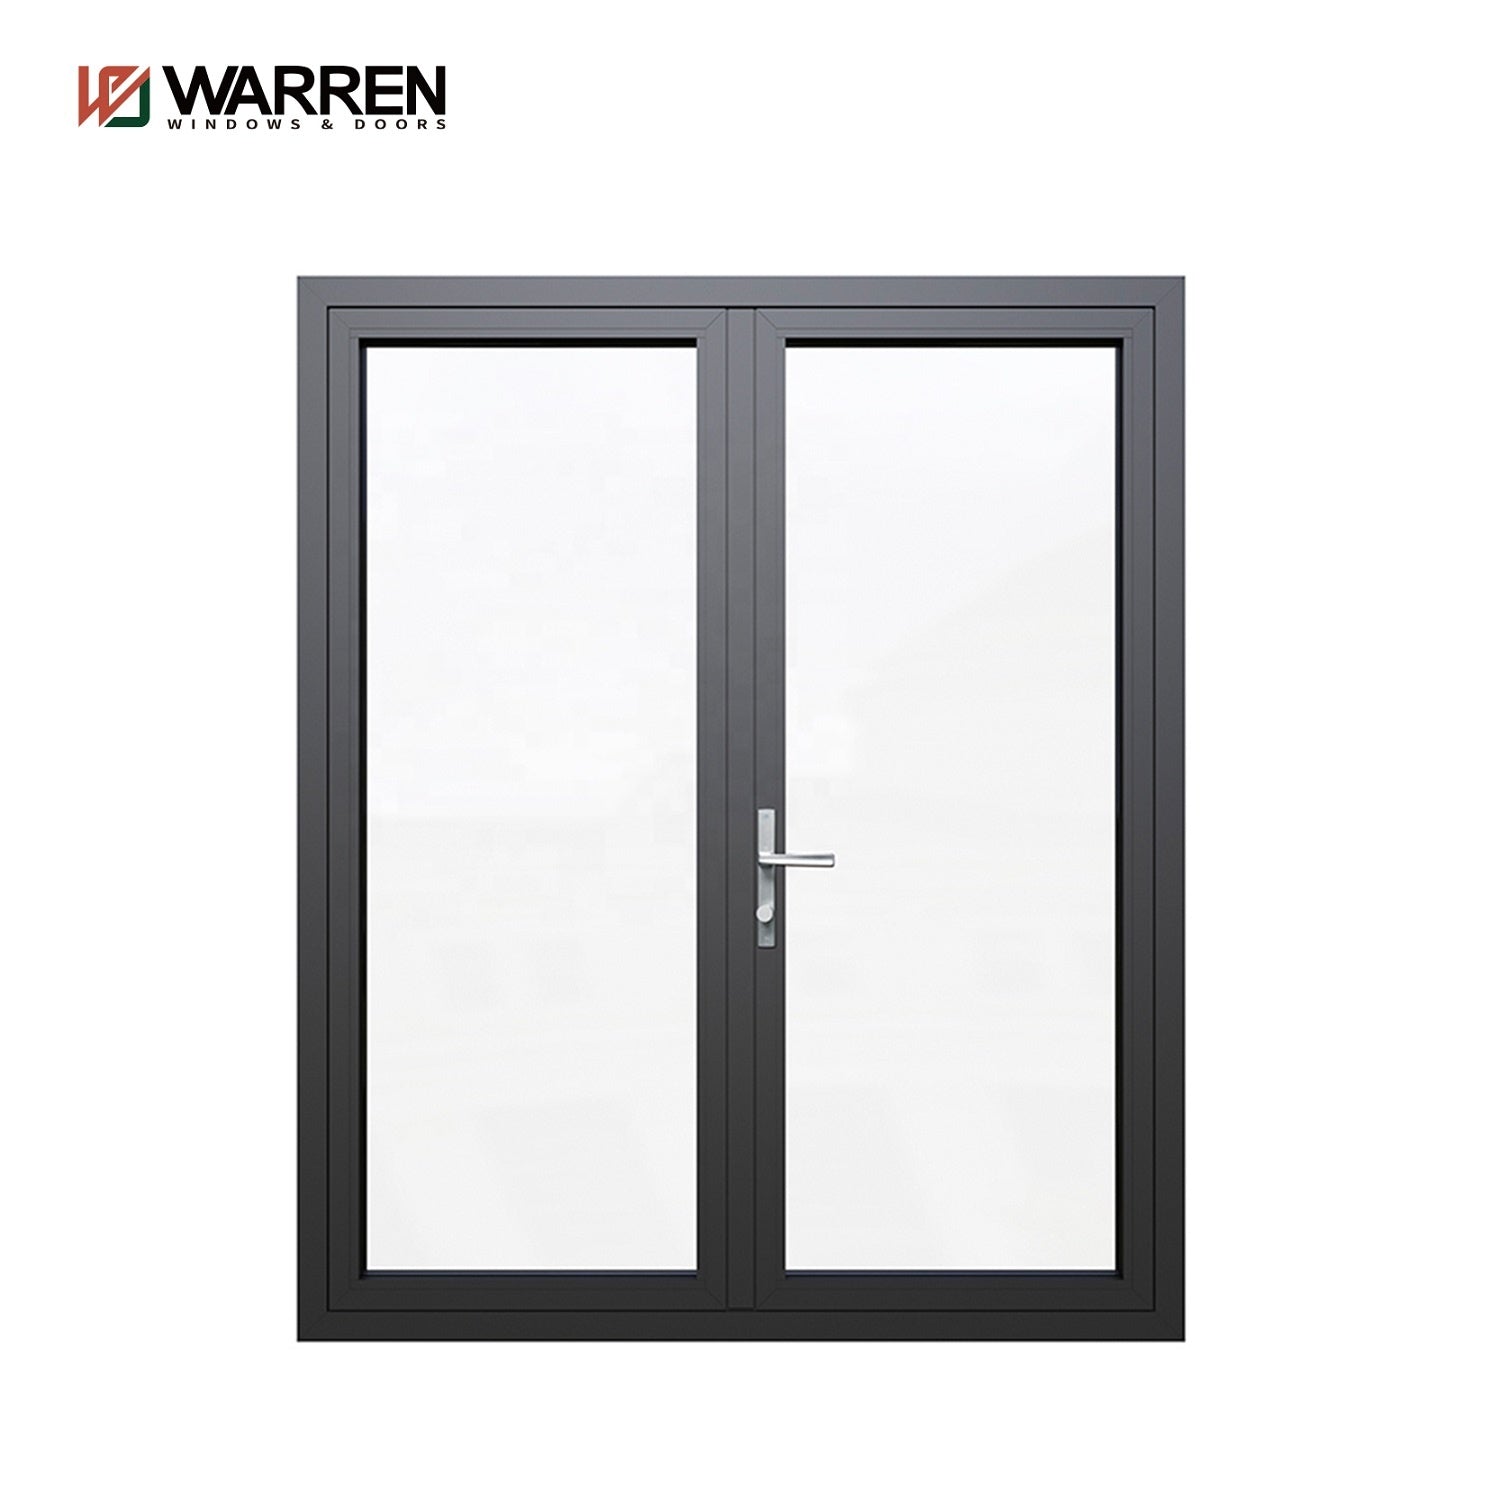 Warren French Door 33*96 door window frame kit aluminium frame thermal break 6060-T66